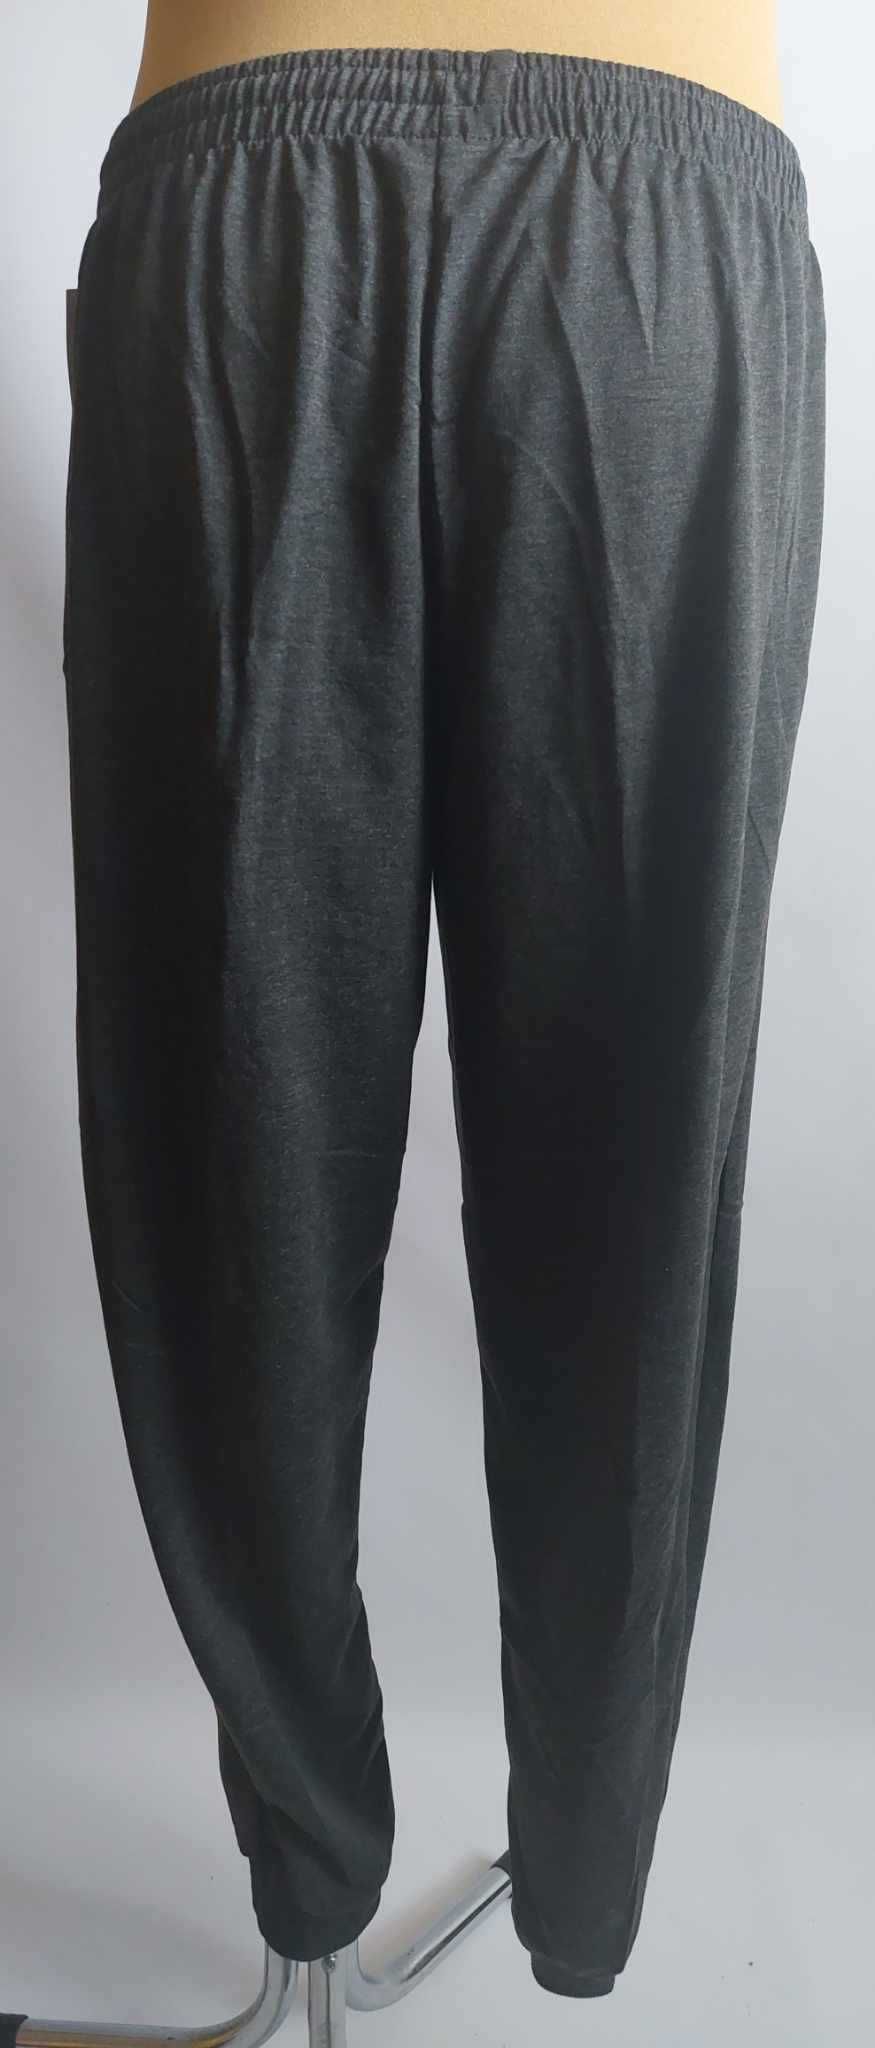 Spodnie męskie dresowe grafit ze ściągaczami LINTEBOB Y-46333-LK r 5XL